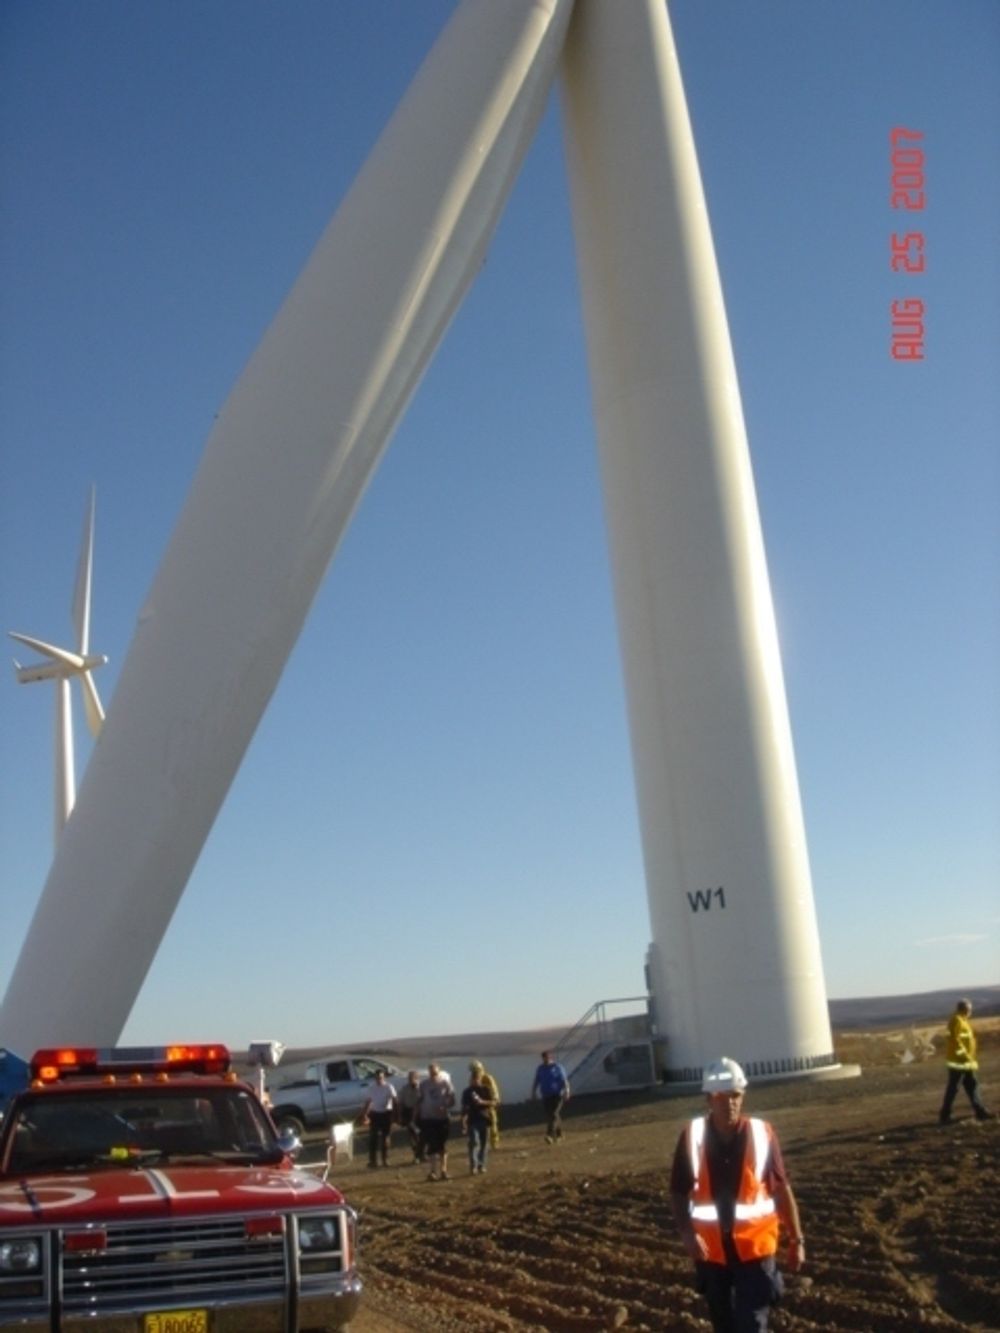 Vindturbinsokkelen var 73 meter høy og knakk på midten. Ulykken skjedde mens turbinen ble inspisert.